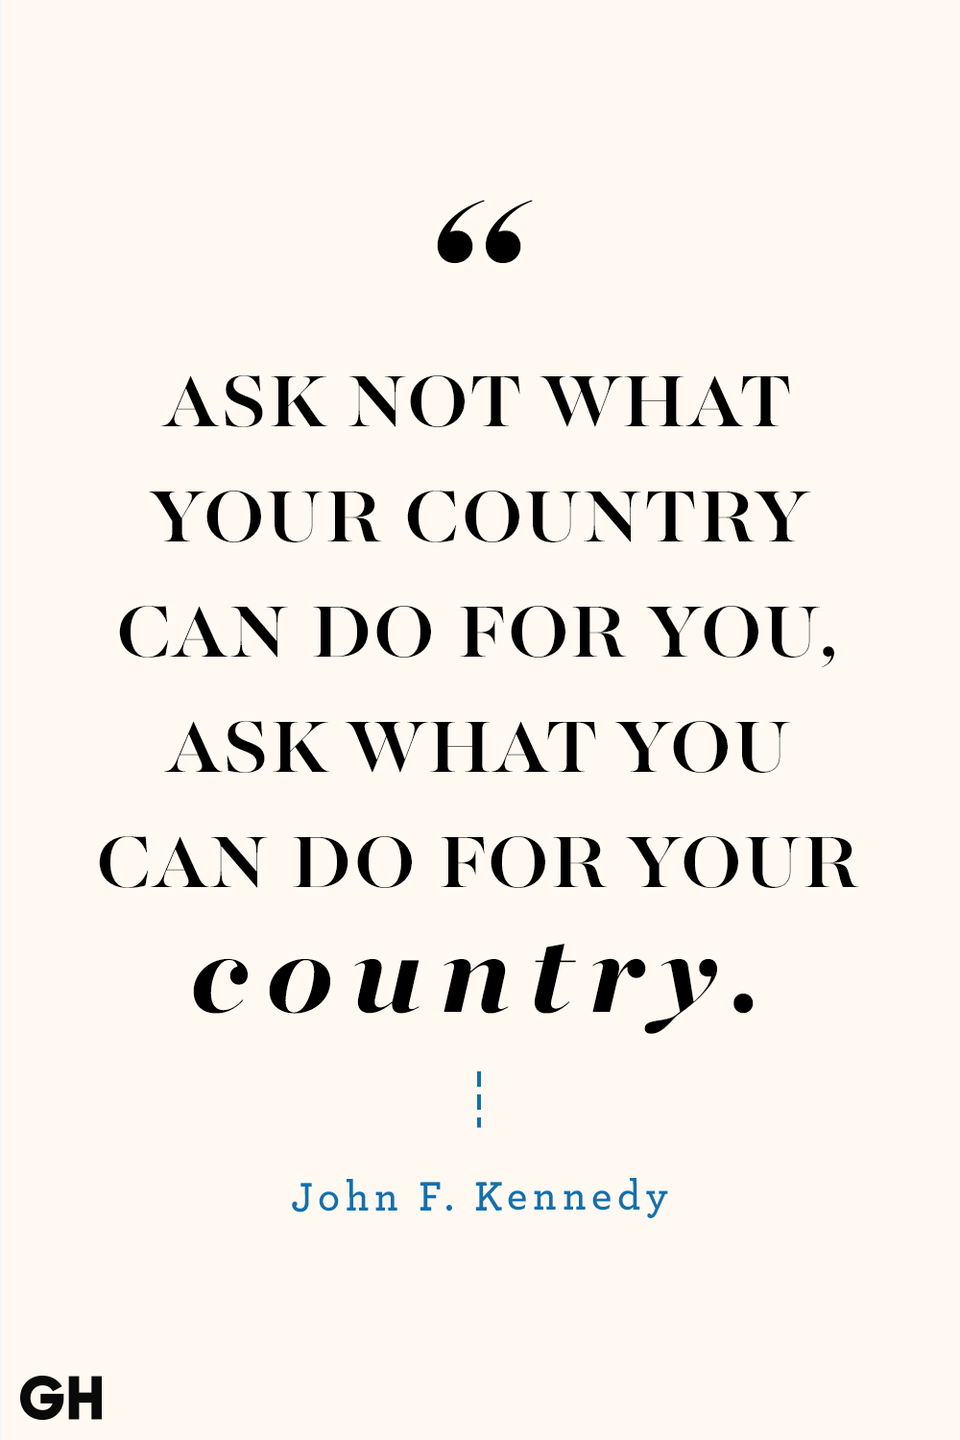 28) John F. Kennedy